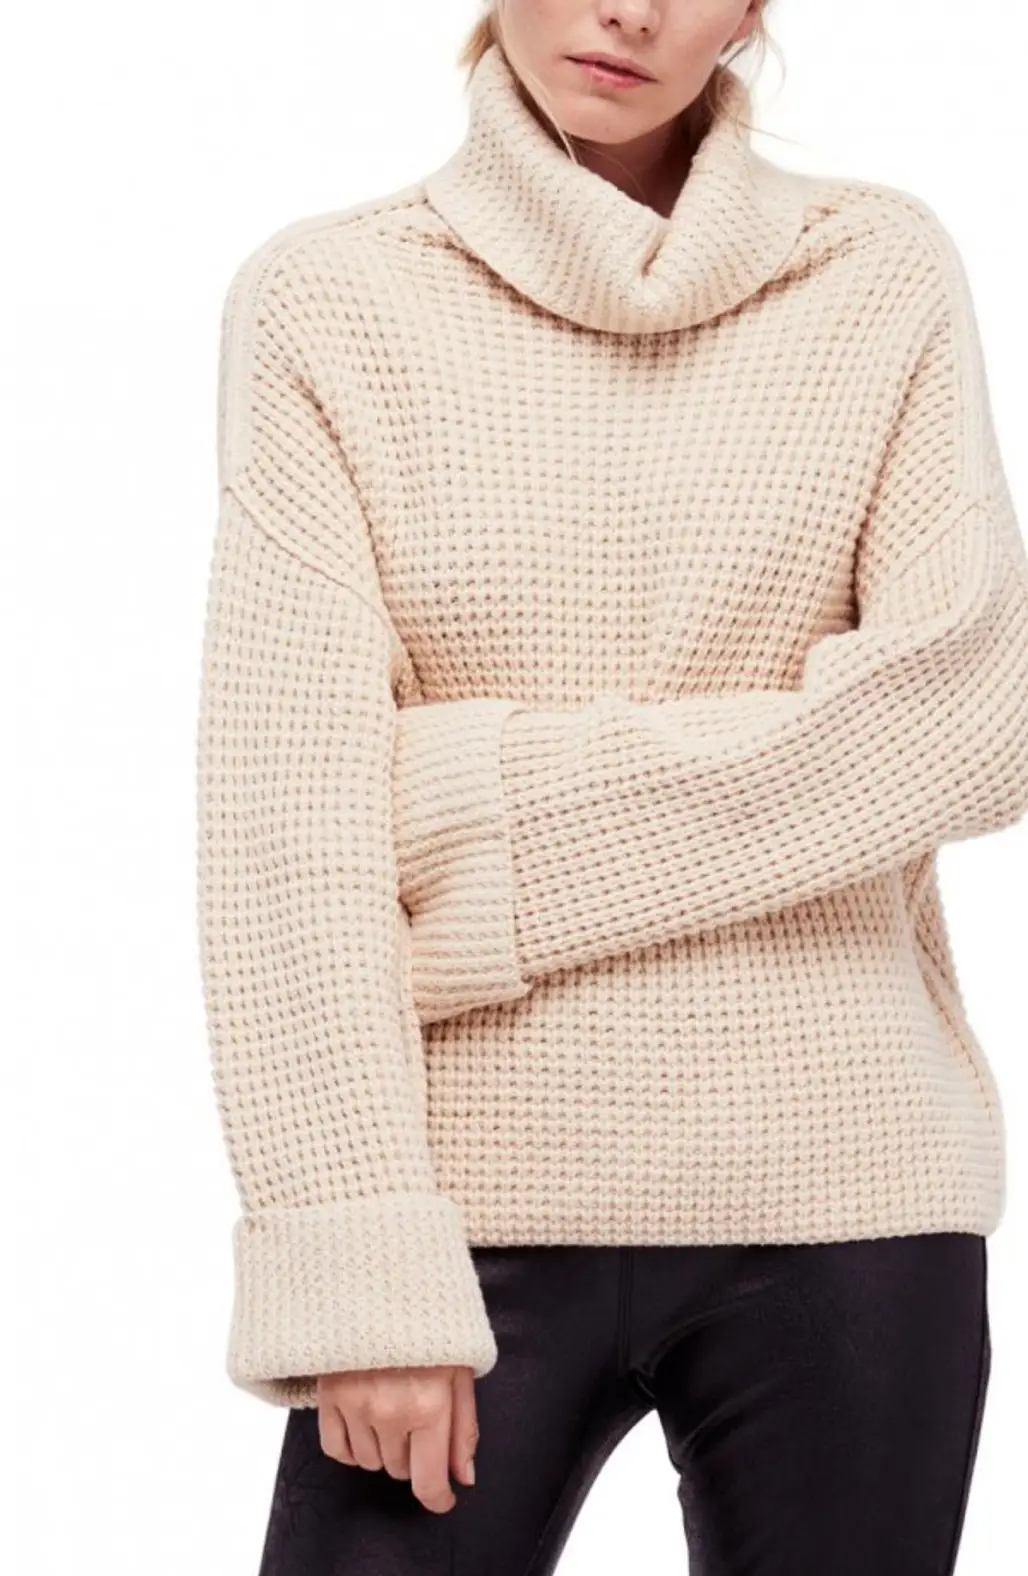 woolen, sweater, neck, sleeve, shoulder,